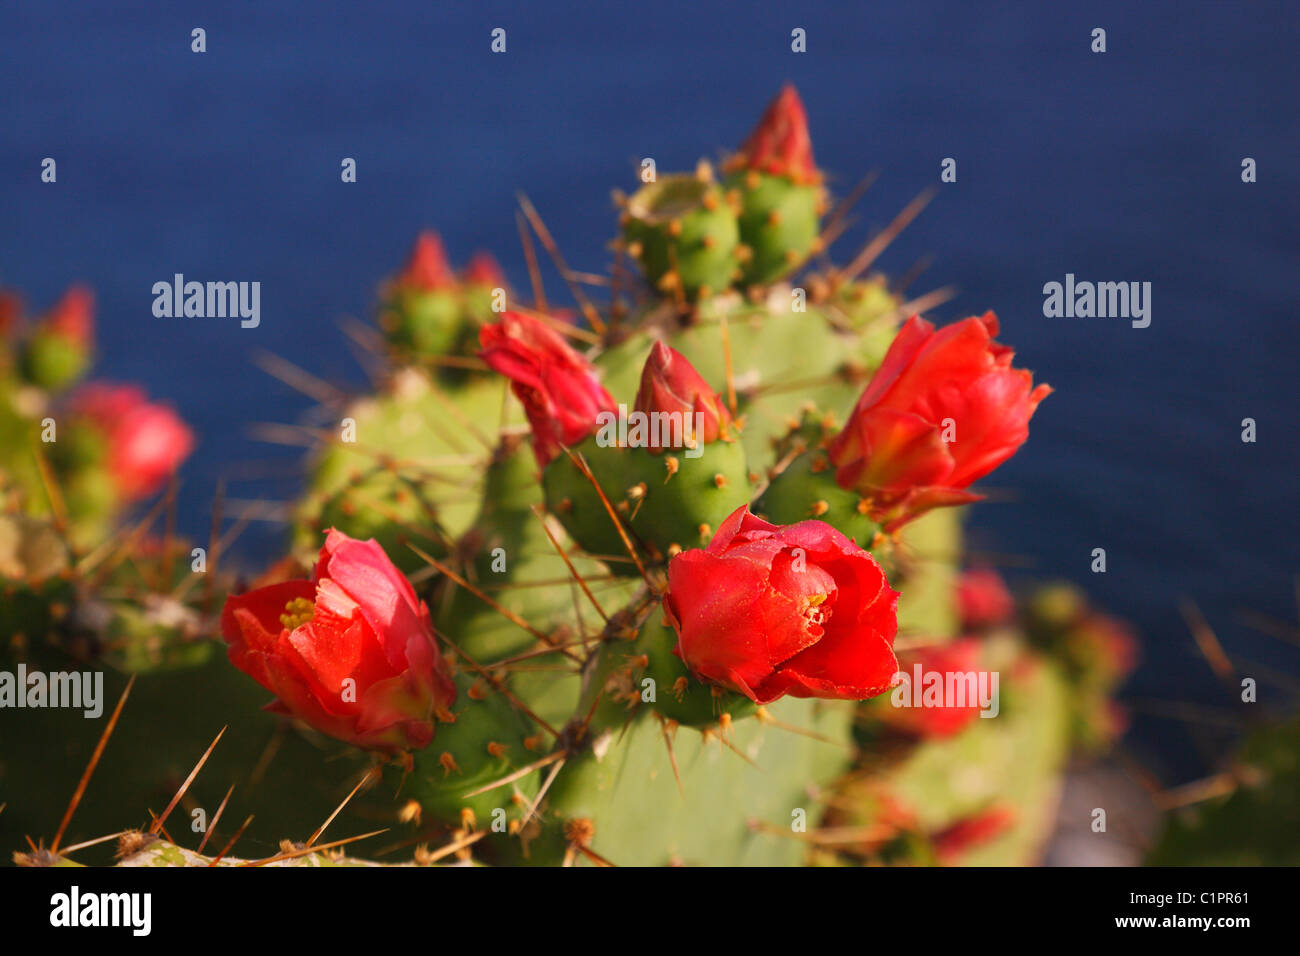 Cactus Opuntia ficus indica close up Stock Photo